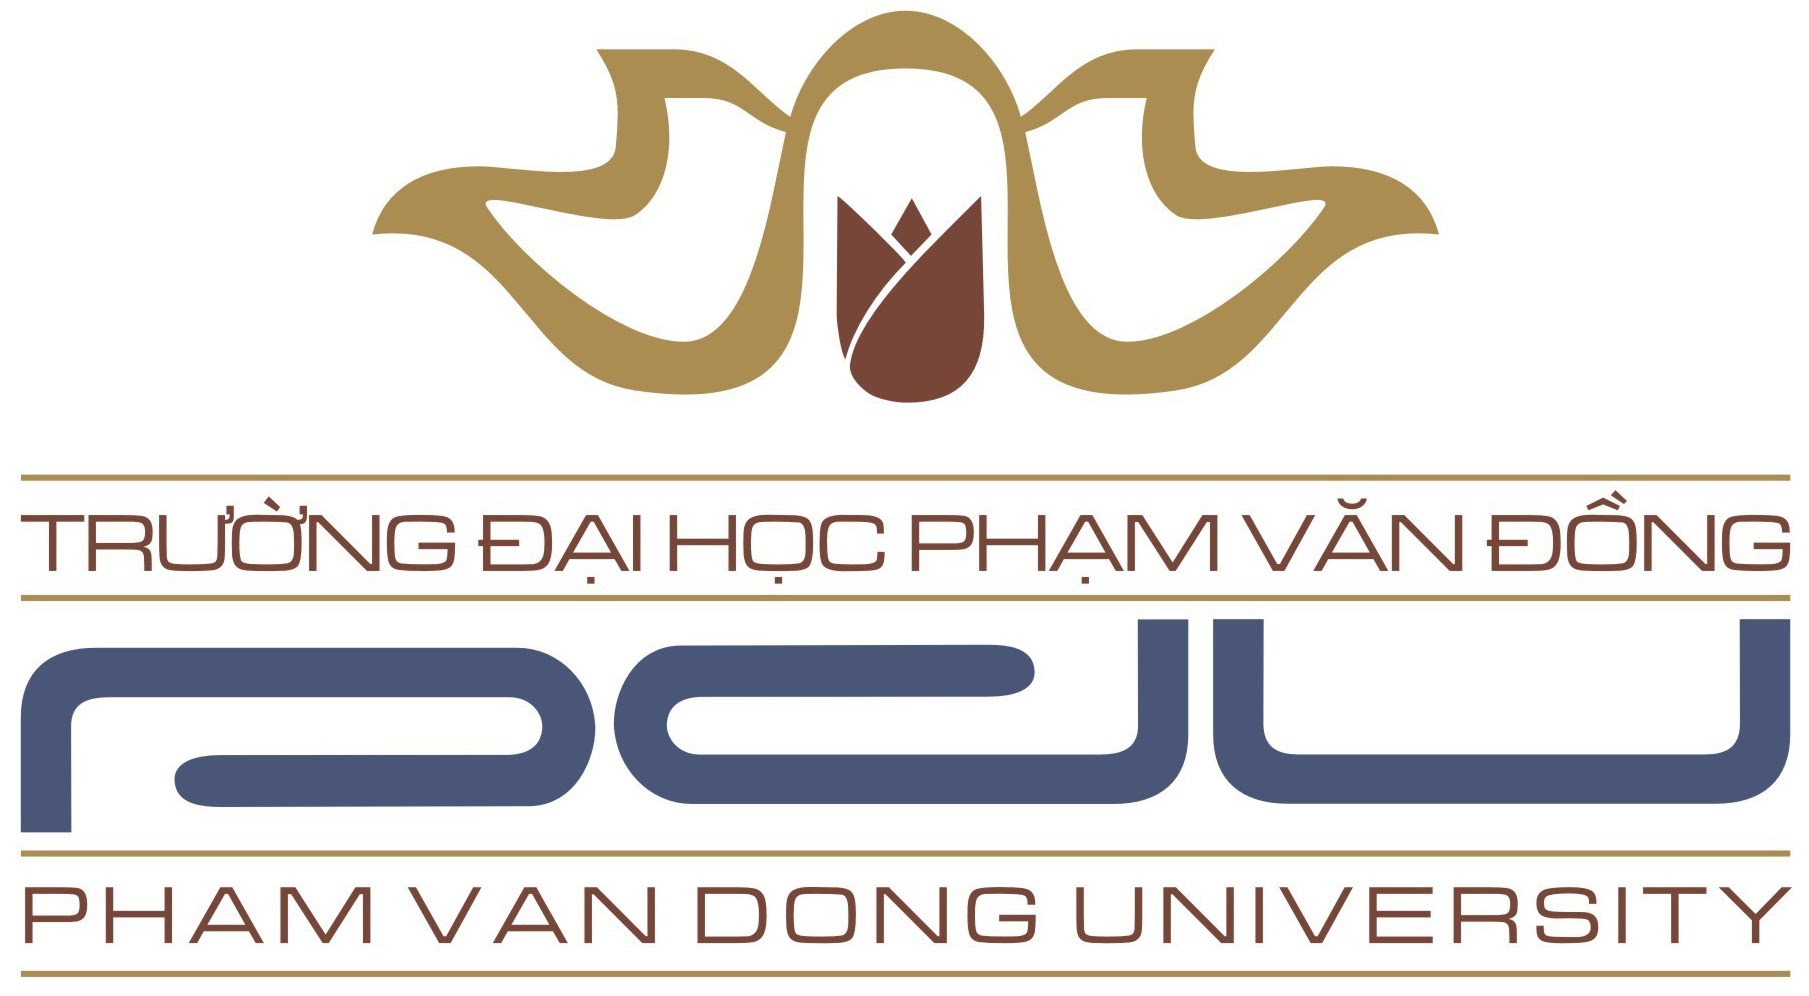 Pham Van Dong University logo